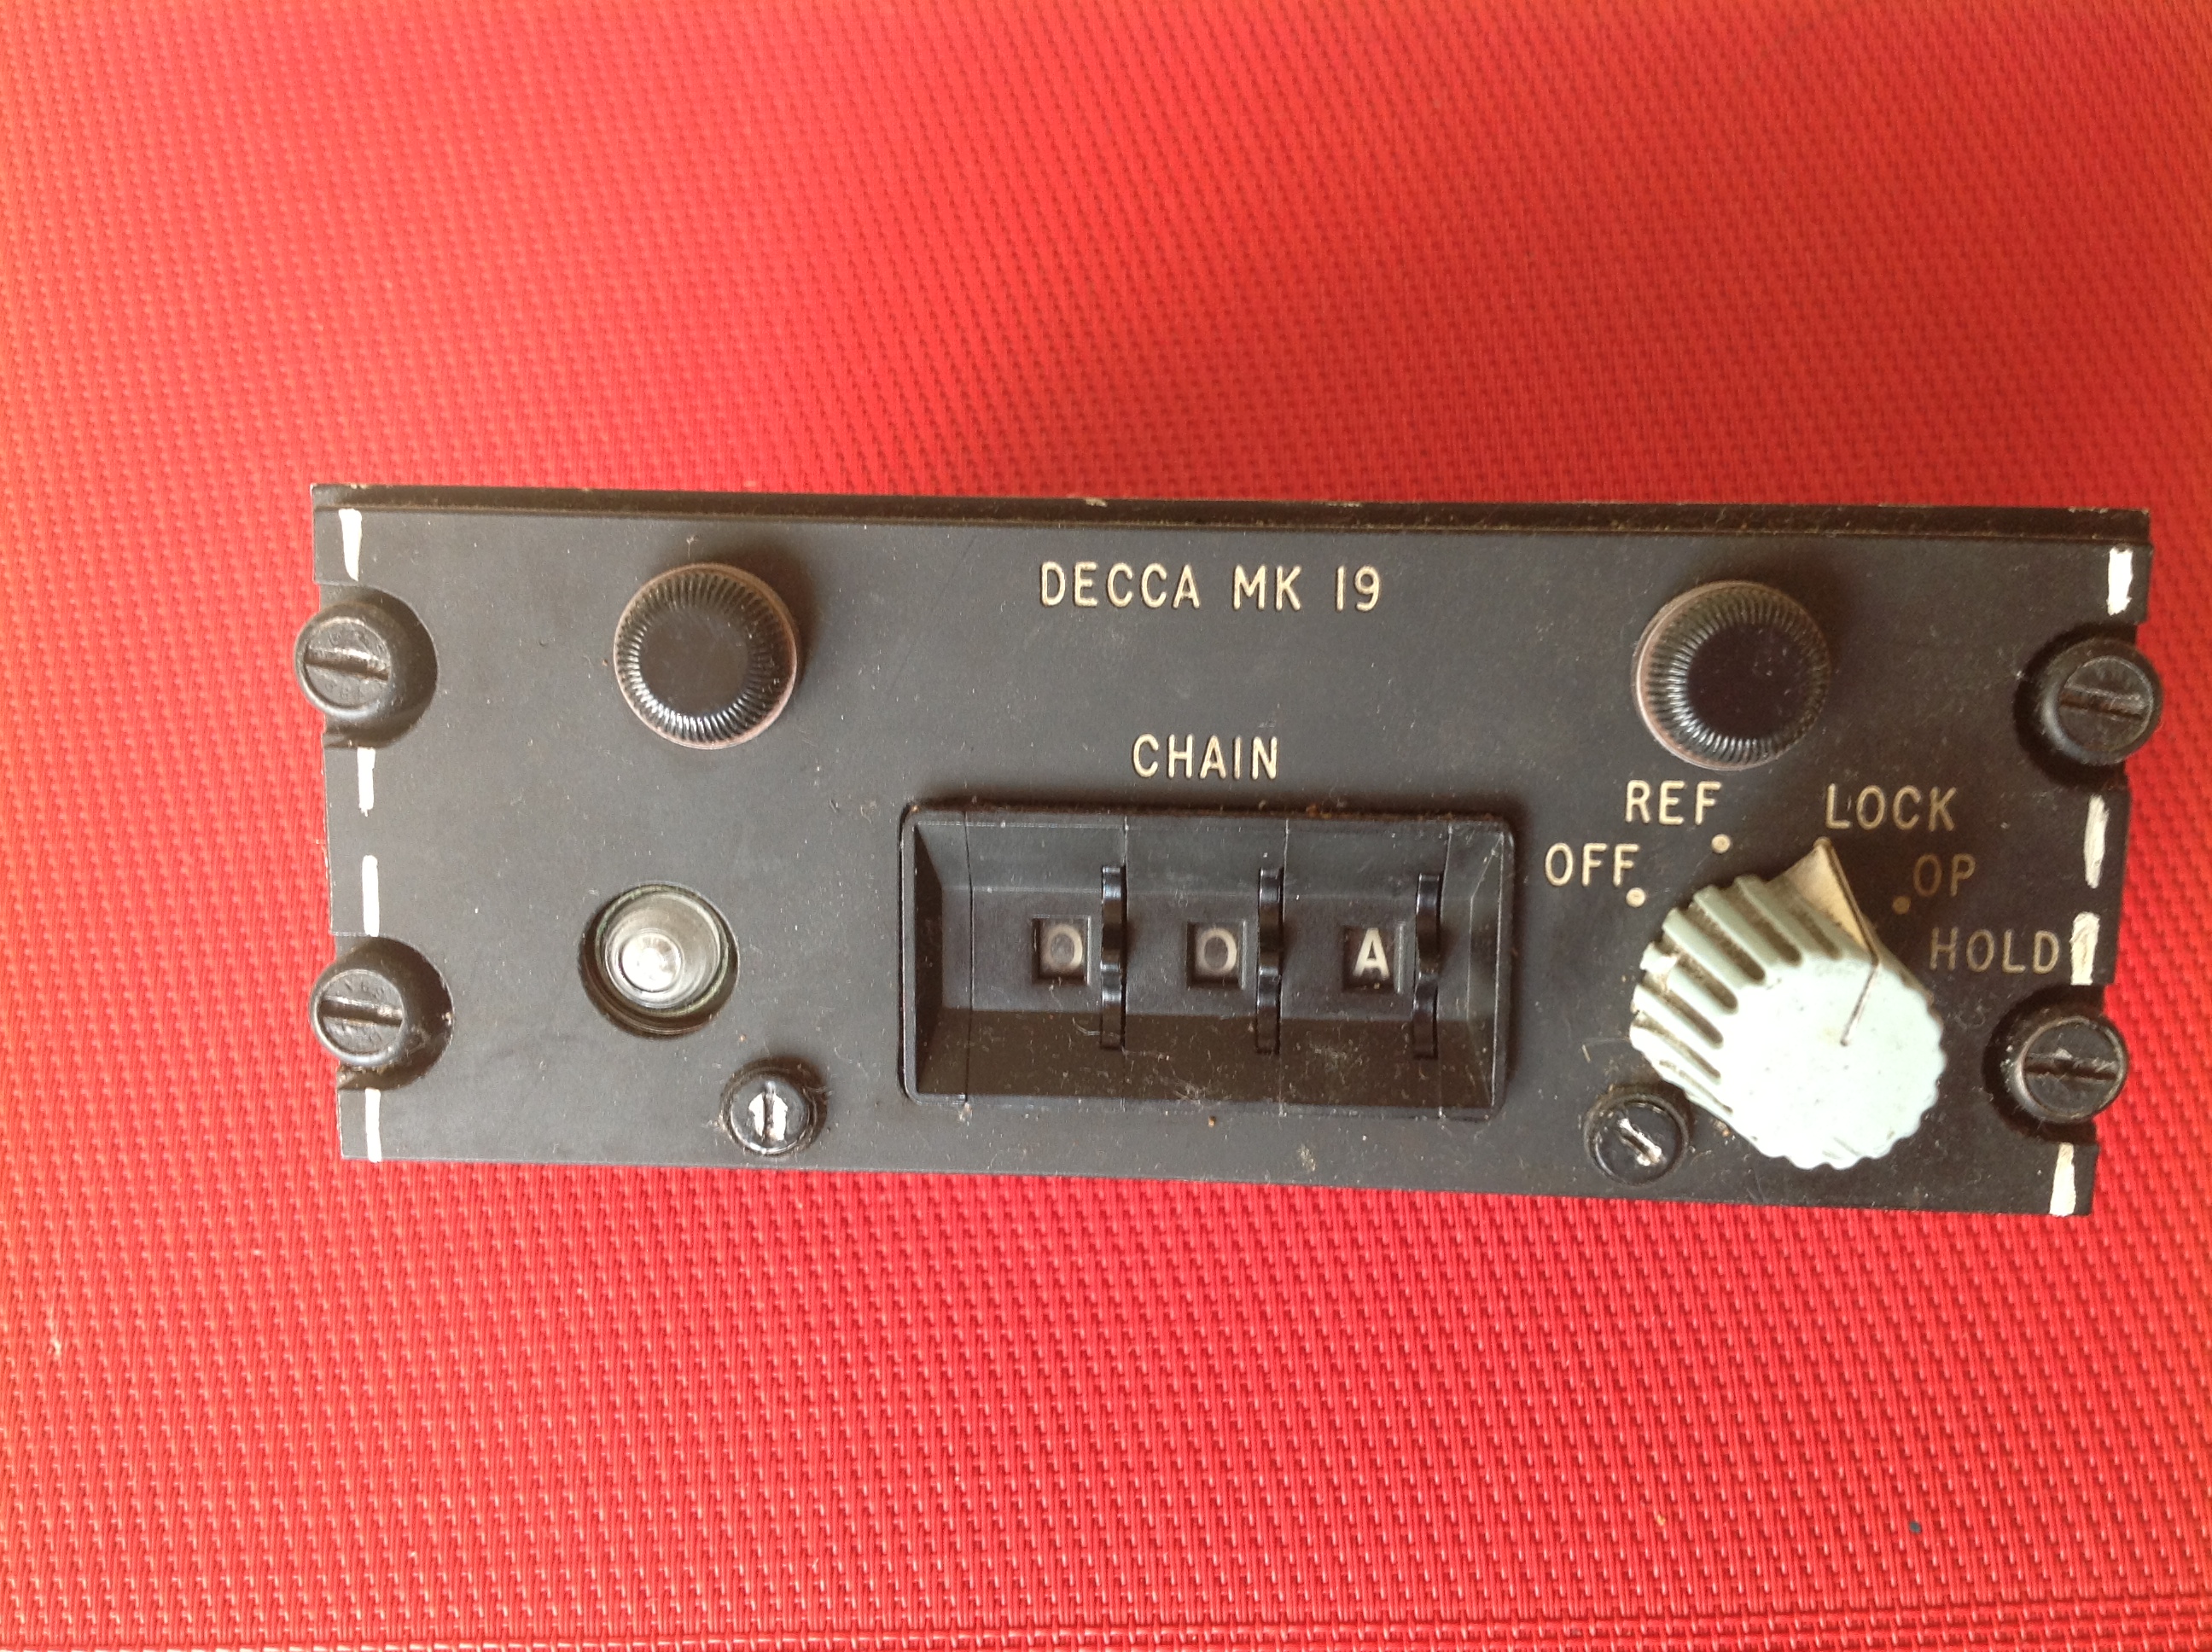 Dekka MK 19, Receiver Control Box Type 8954B